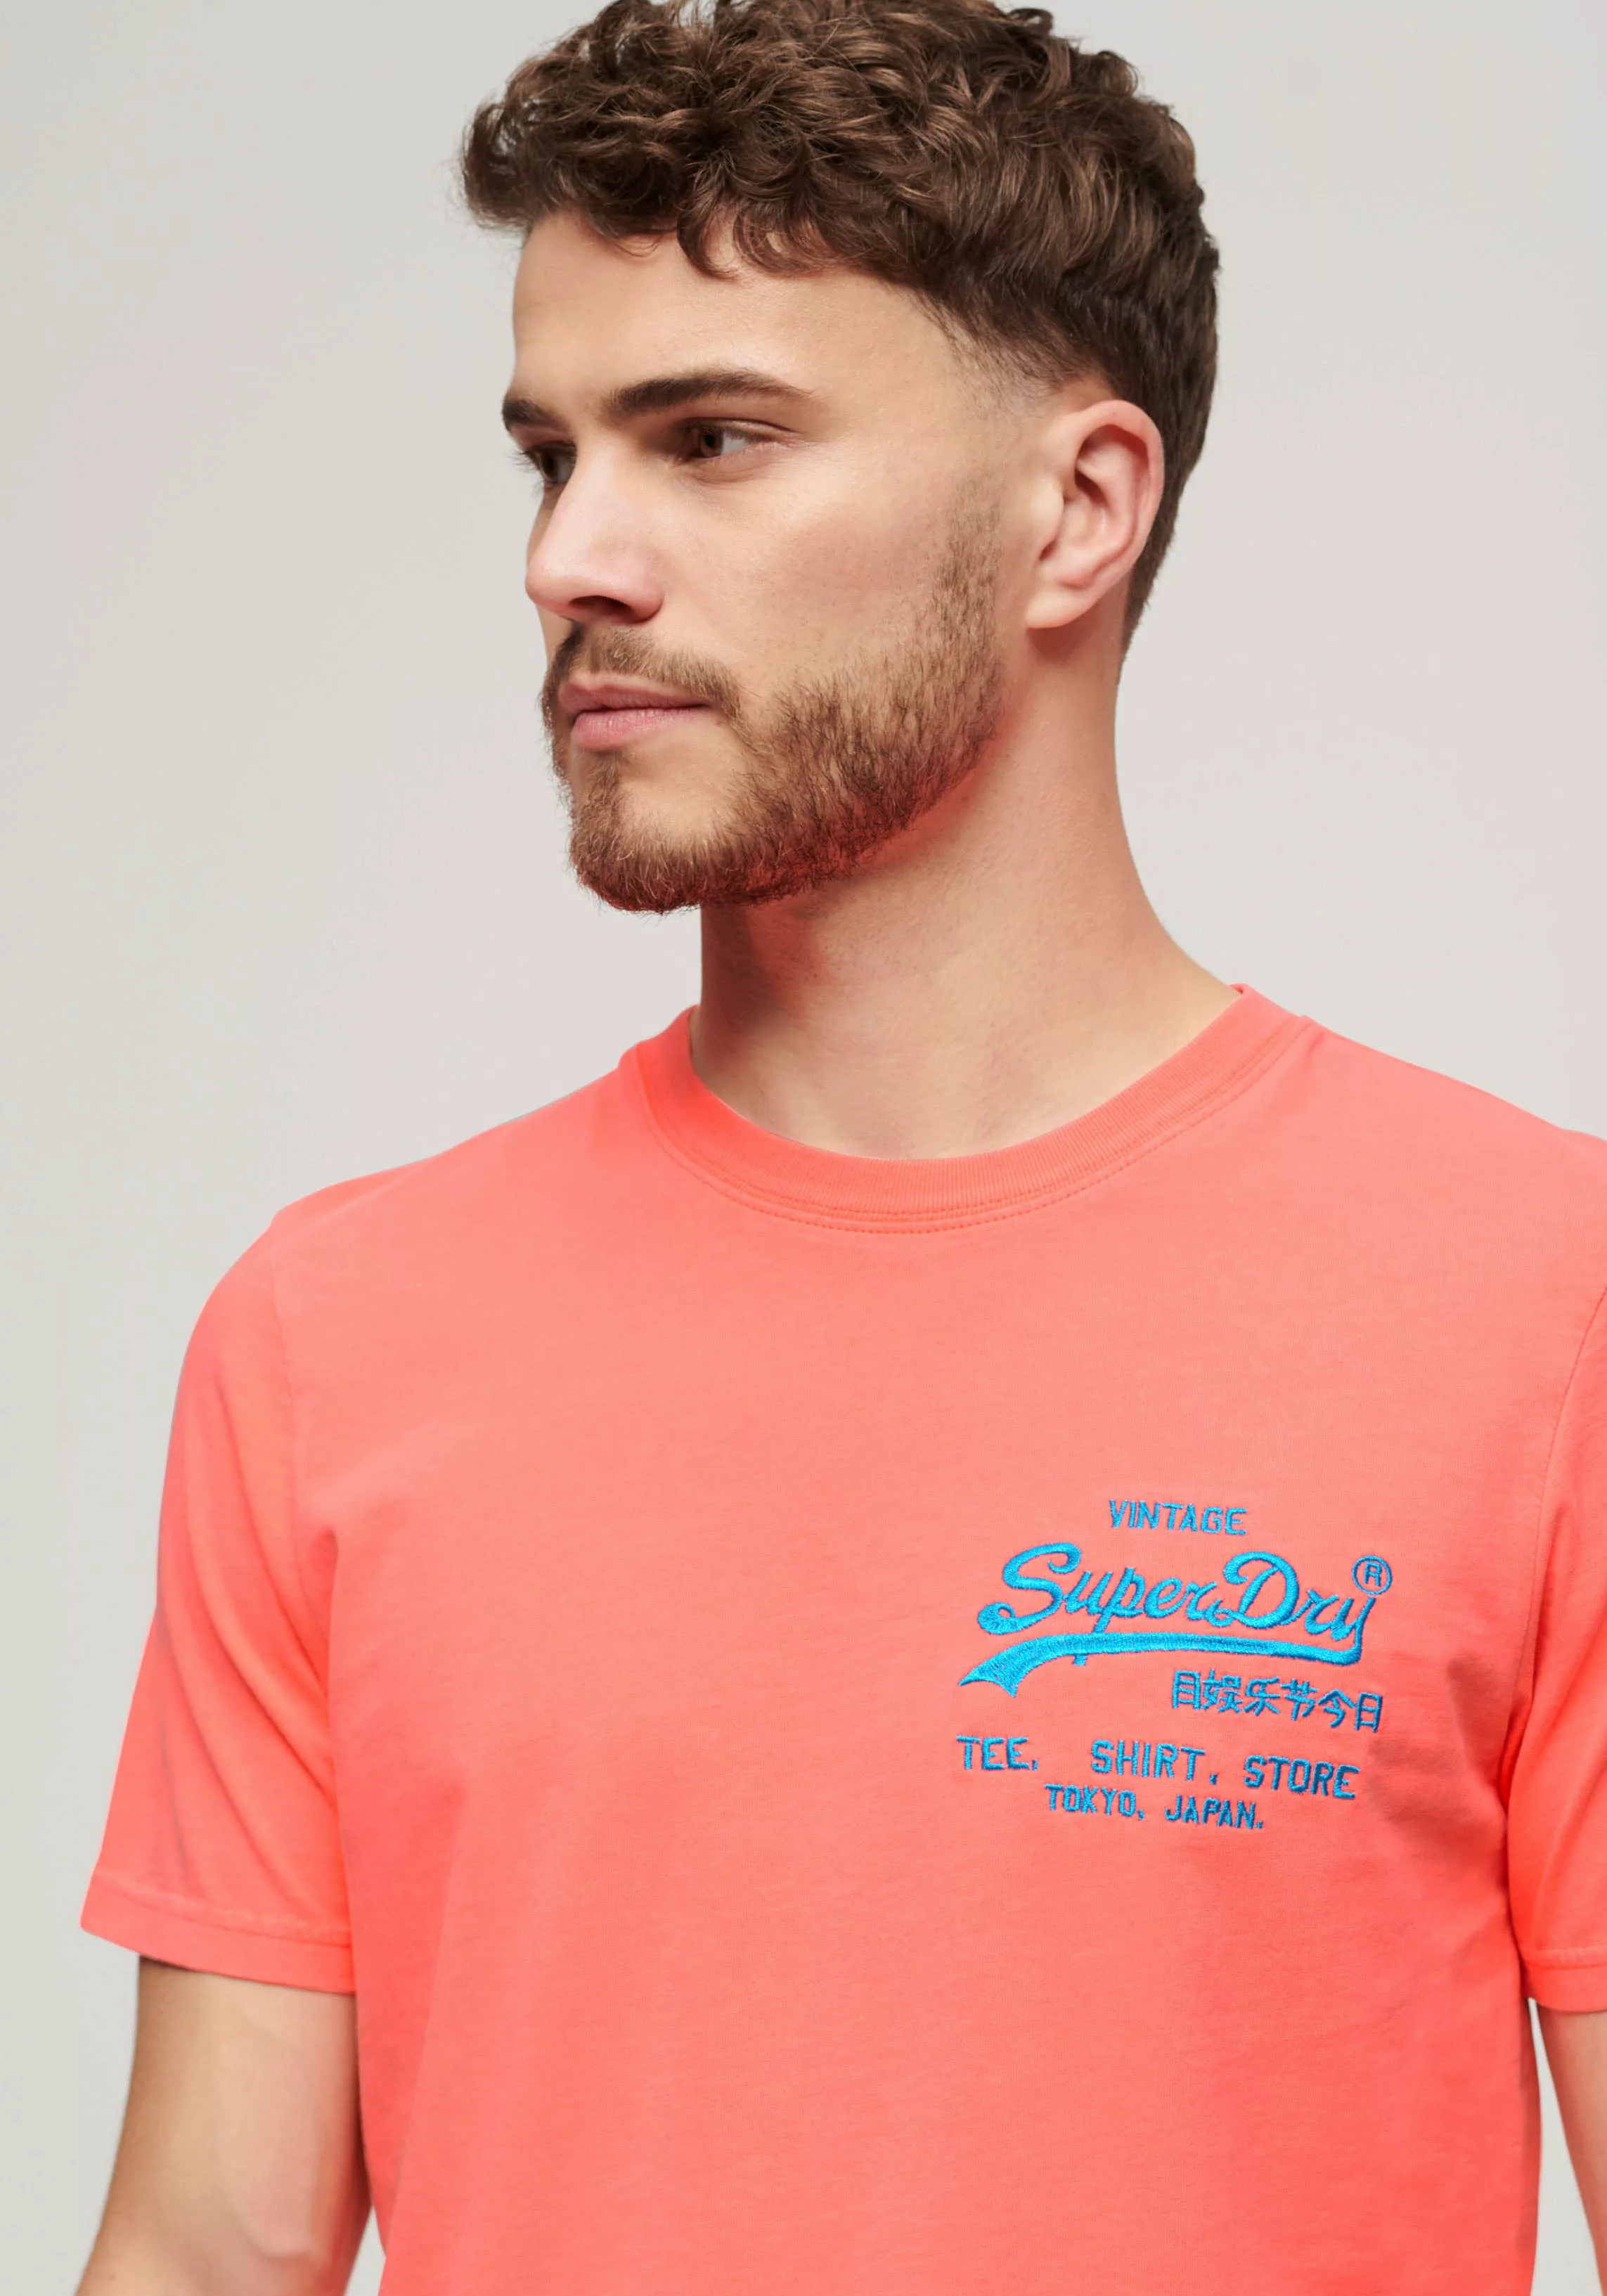 Superdry Print-Shirt "SD-NEON VL T SHIRT" günstig online kaufen